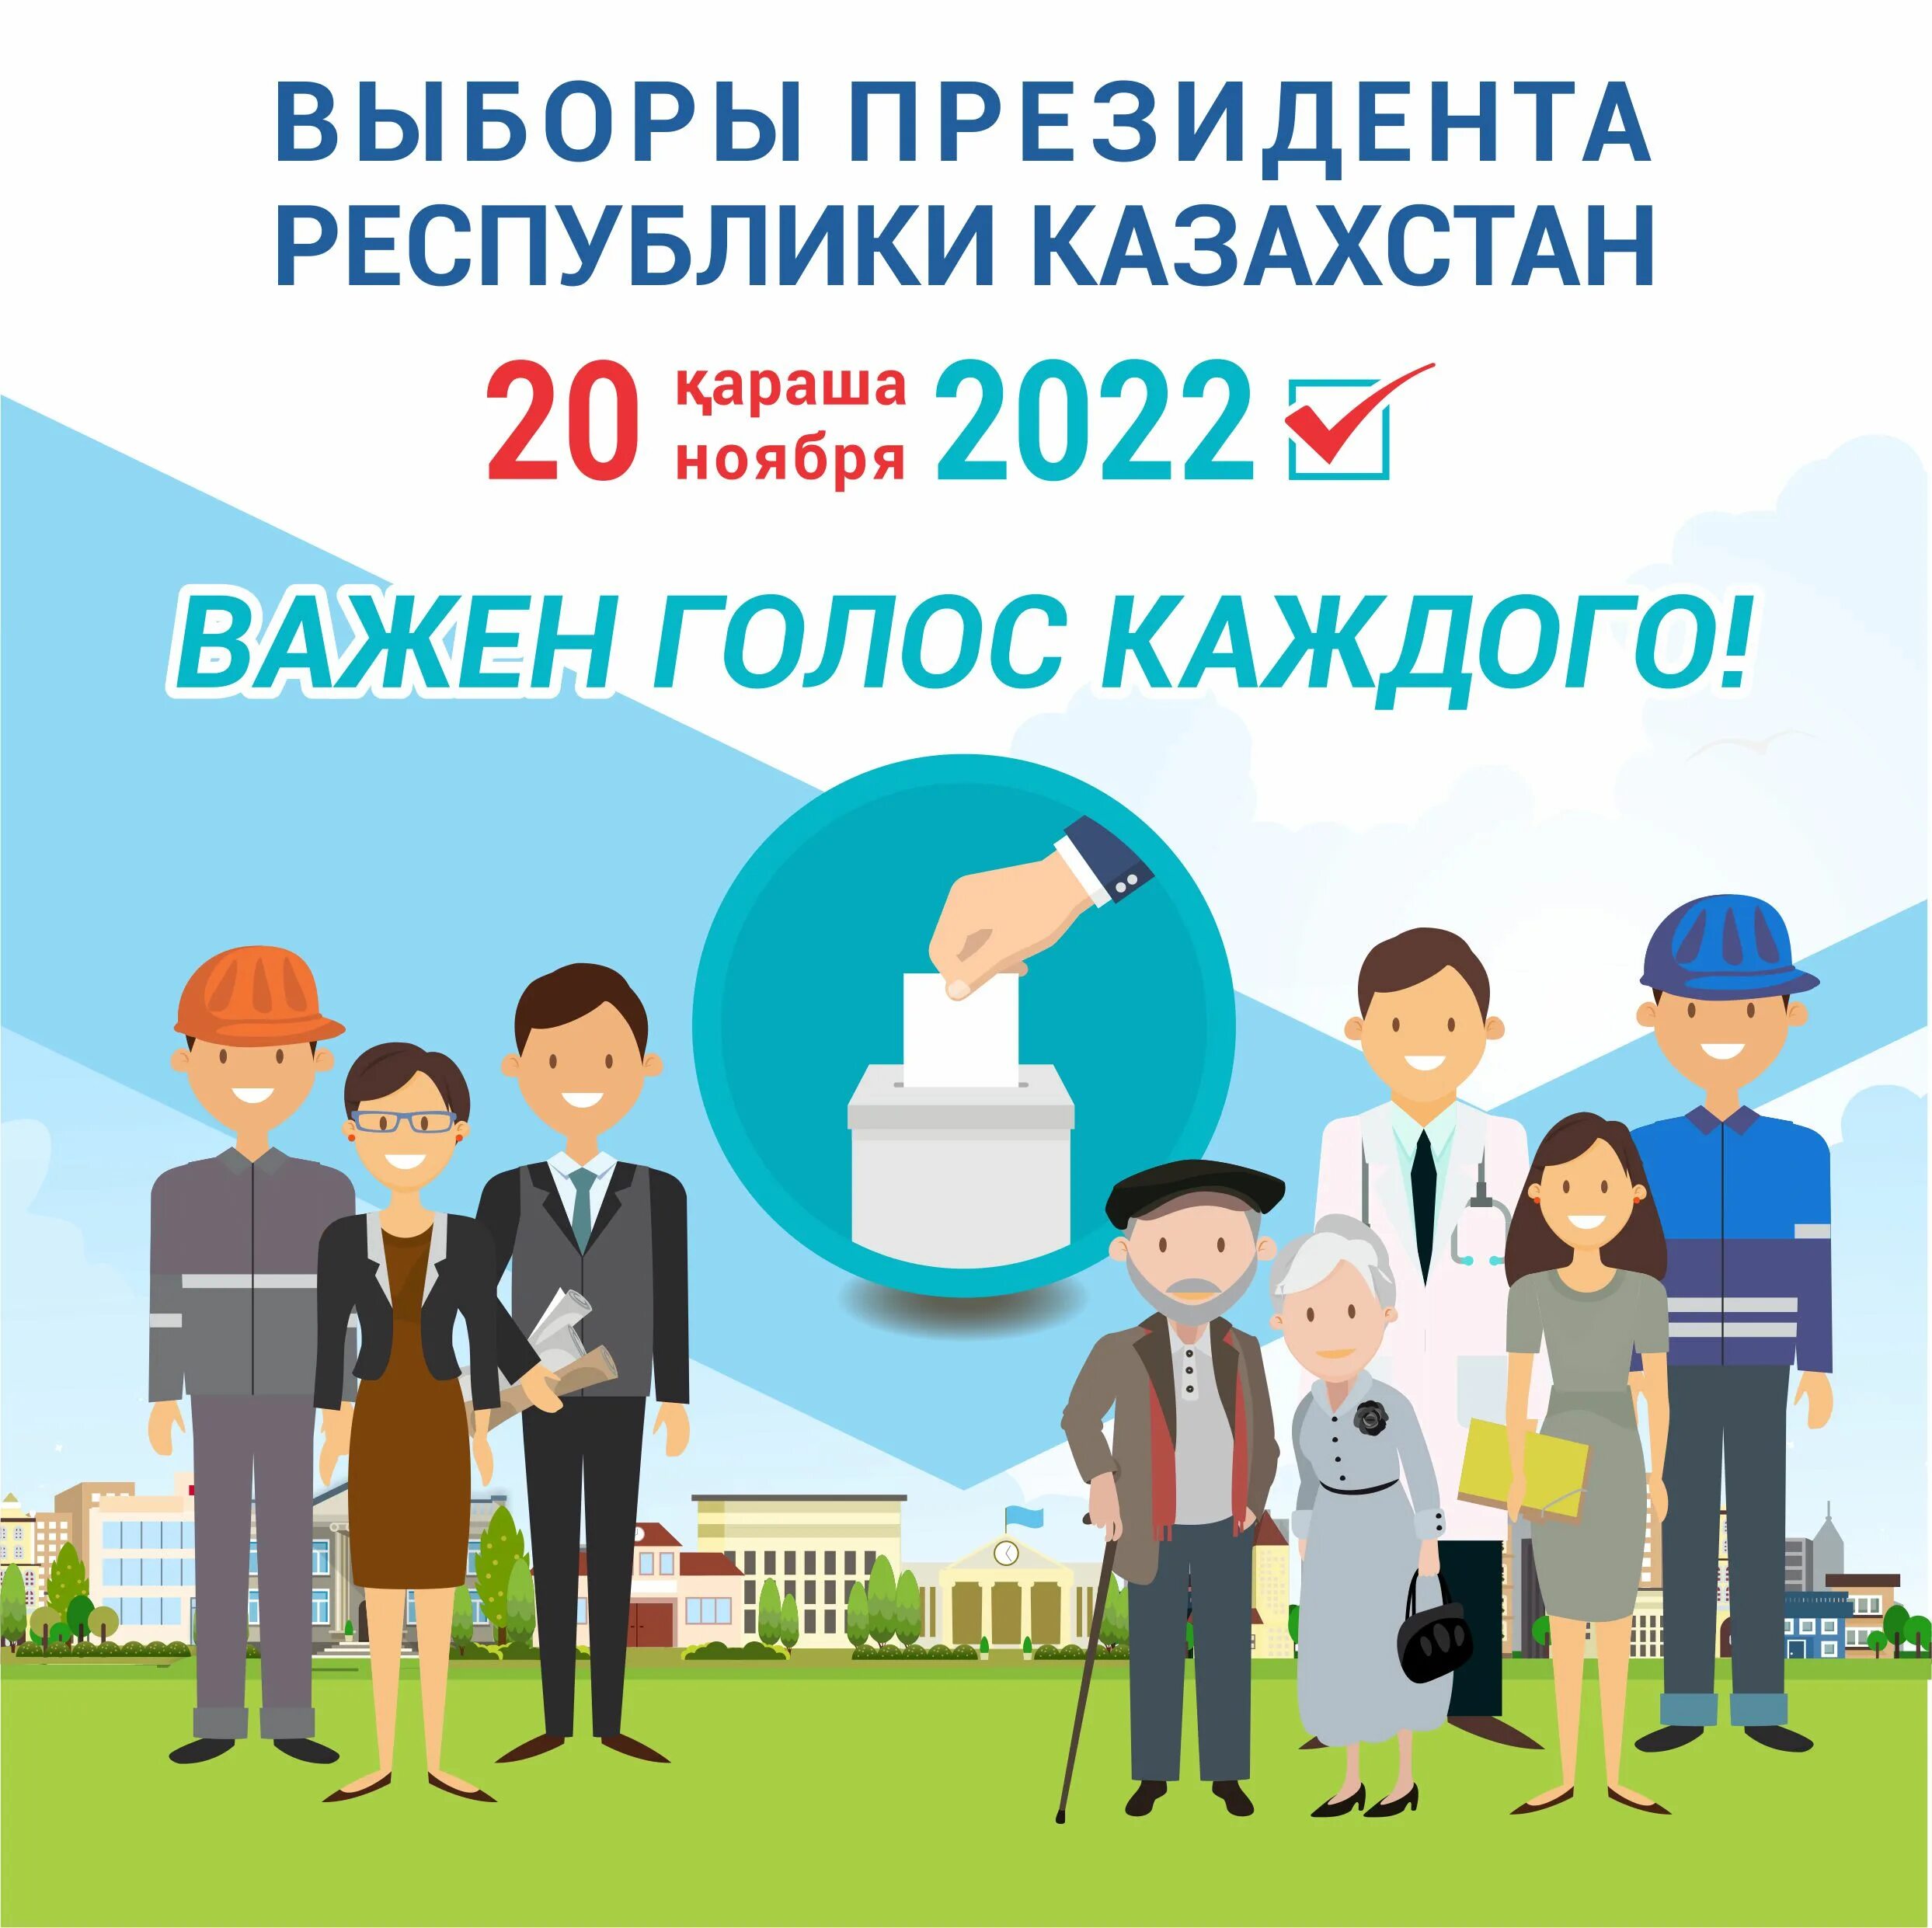 Выборы президента Казахстана. Выборы в Казахстане в 2022. Президентские выборы в Казахстане 2022. Информация про выборы